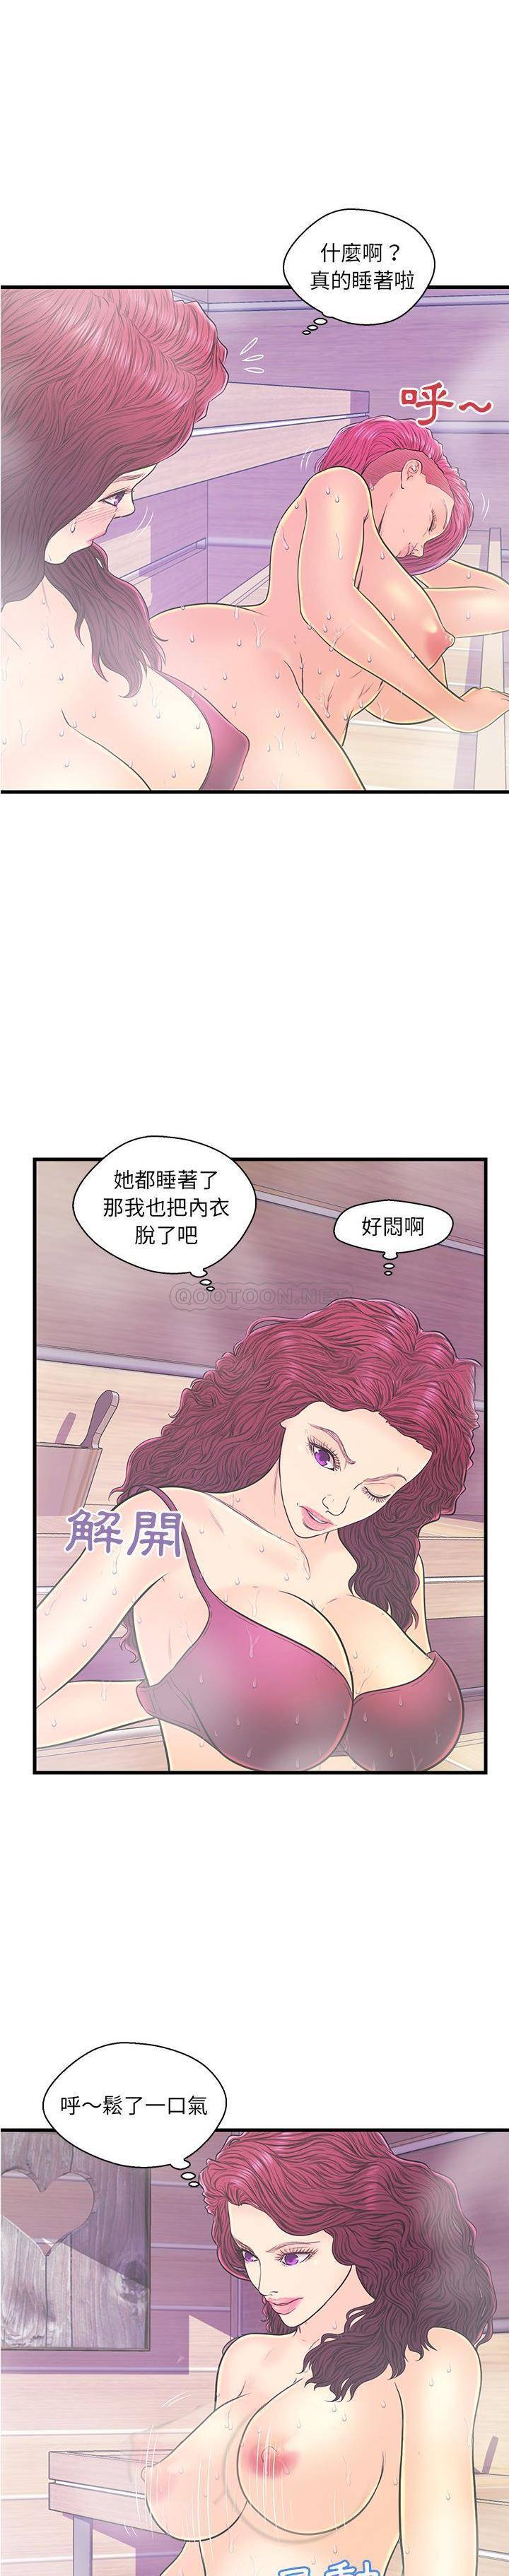 韩国污漫画 男女配不配 第18话 11